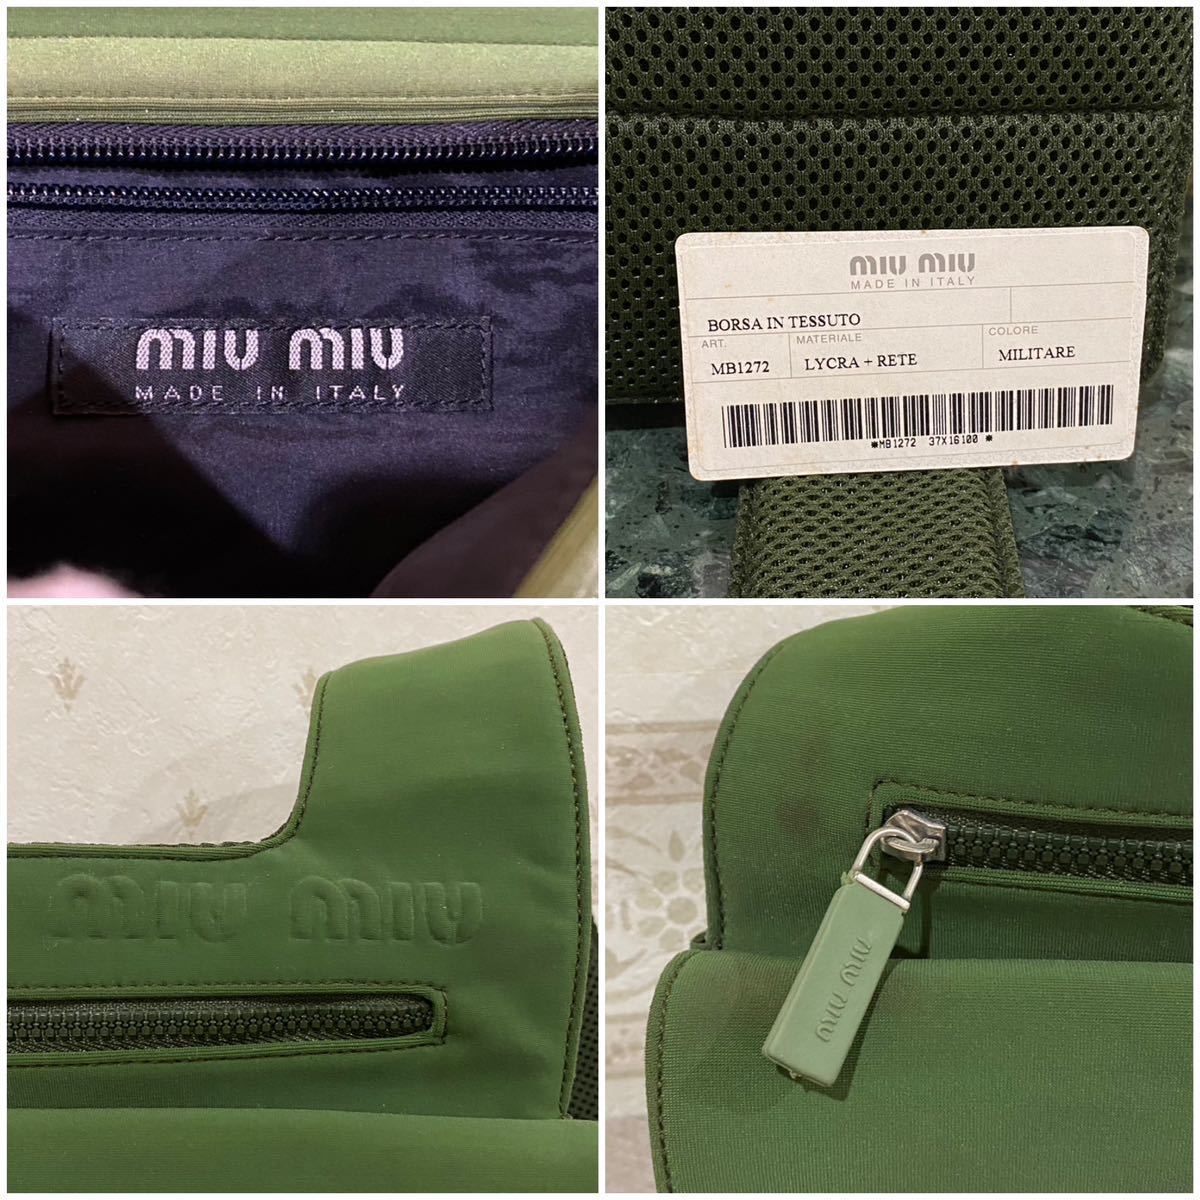  редкий модель miumiu ARCHIVE 1999SS 90\'S cross body bag нейлон × сетка one сумка на плечо наклонный .. Vintage сумка редкость 